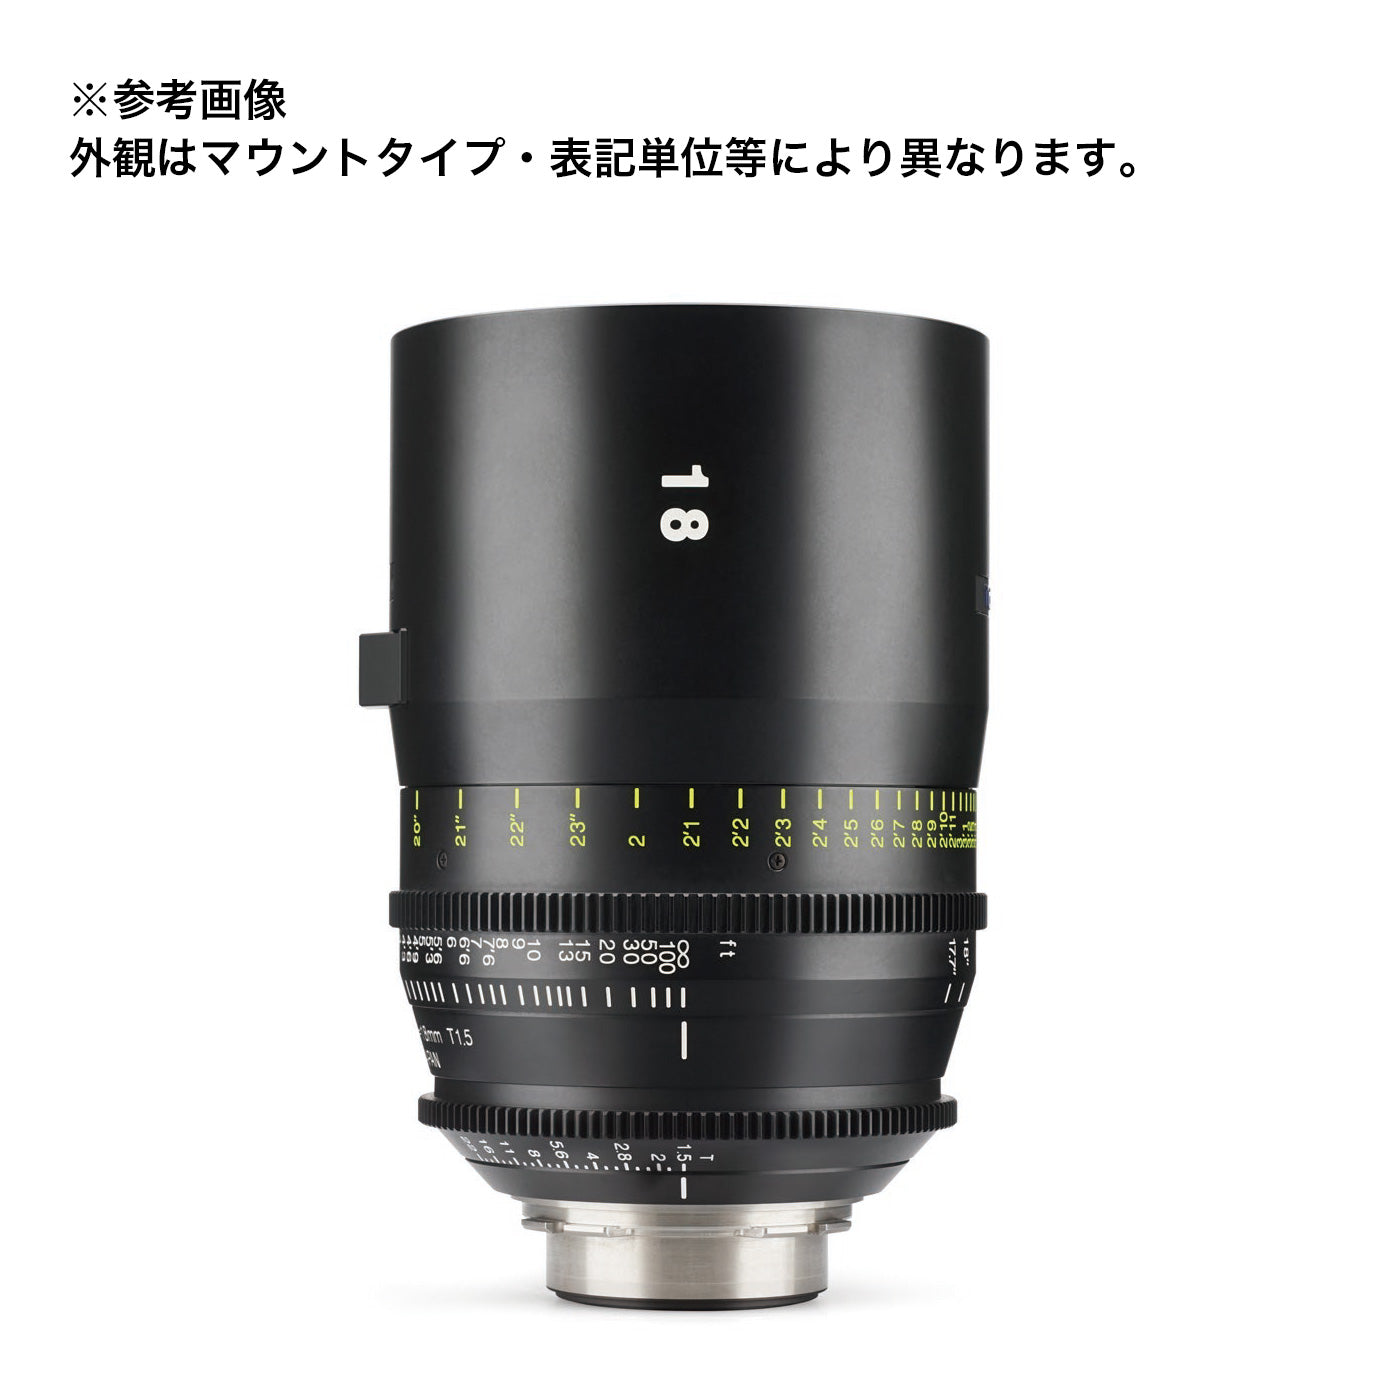 Tokina(トキナー) シネマプライムレンズ VISTA 18mm T1.5 CINEMA LENS PLマウント メートル表記 [264143]